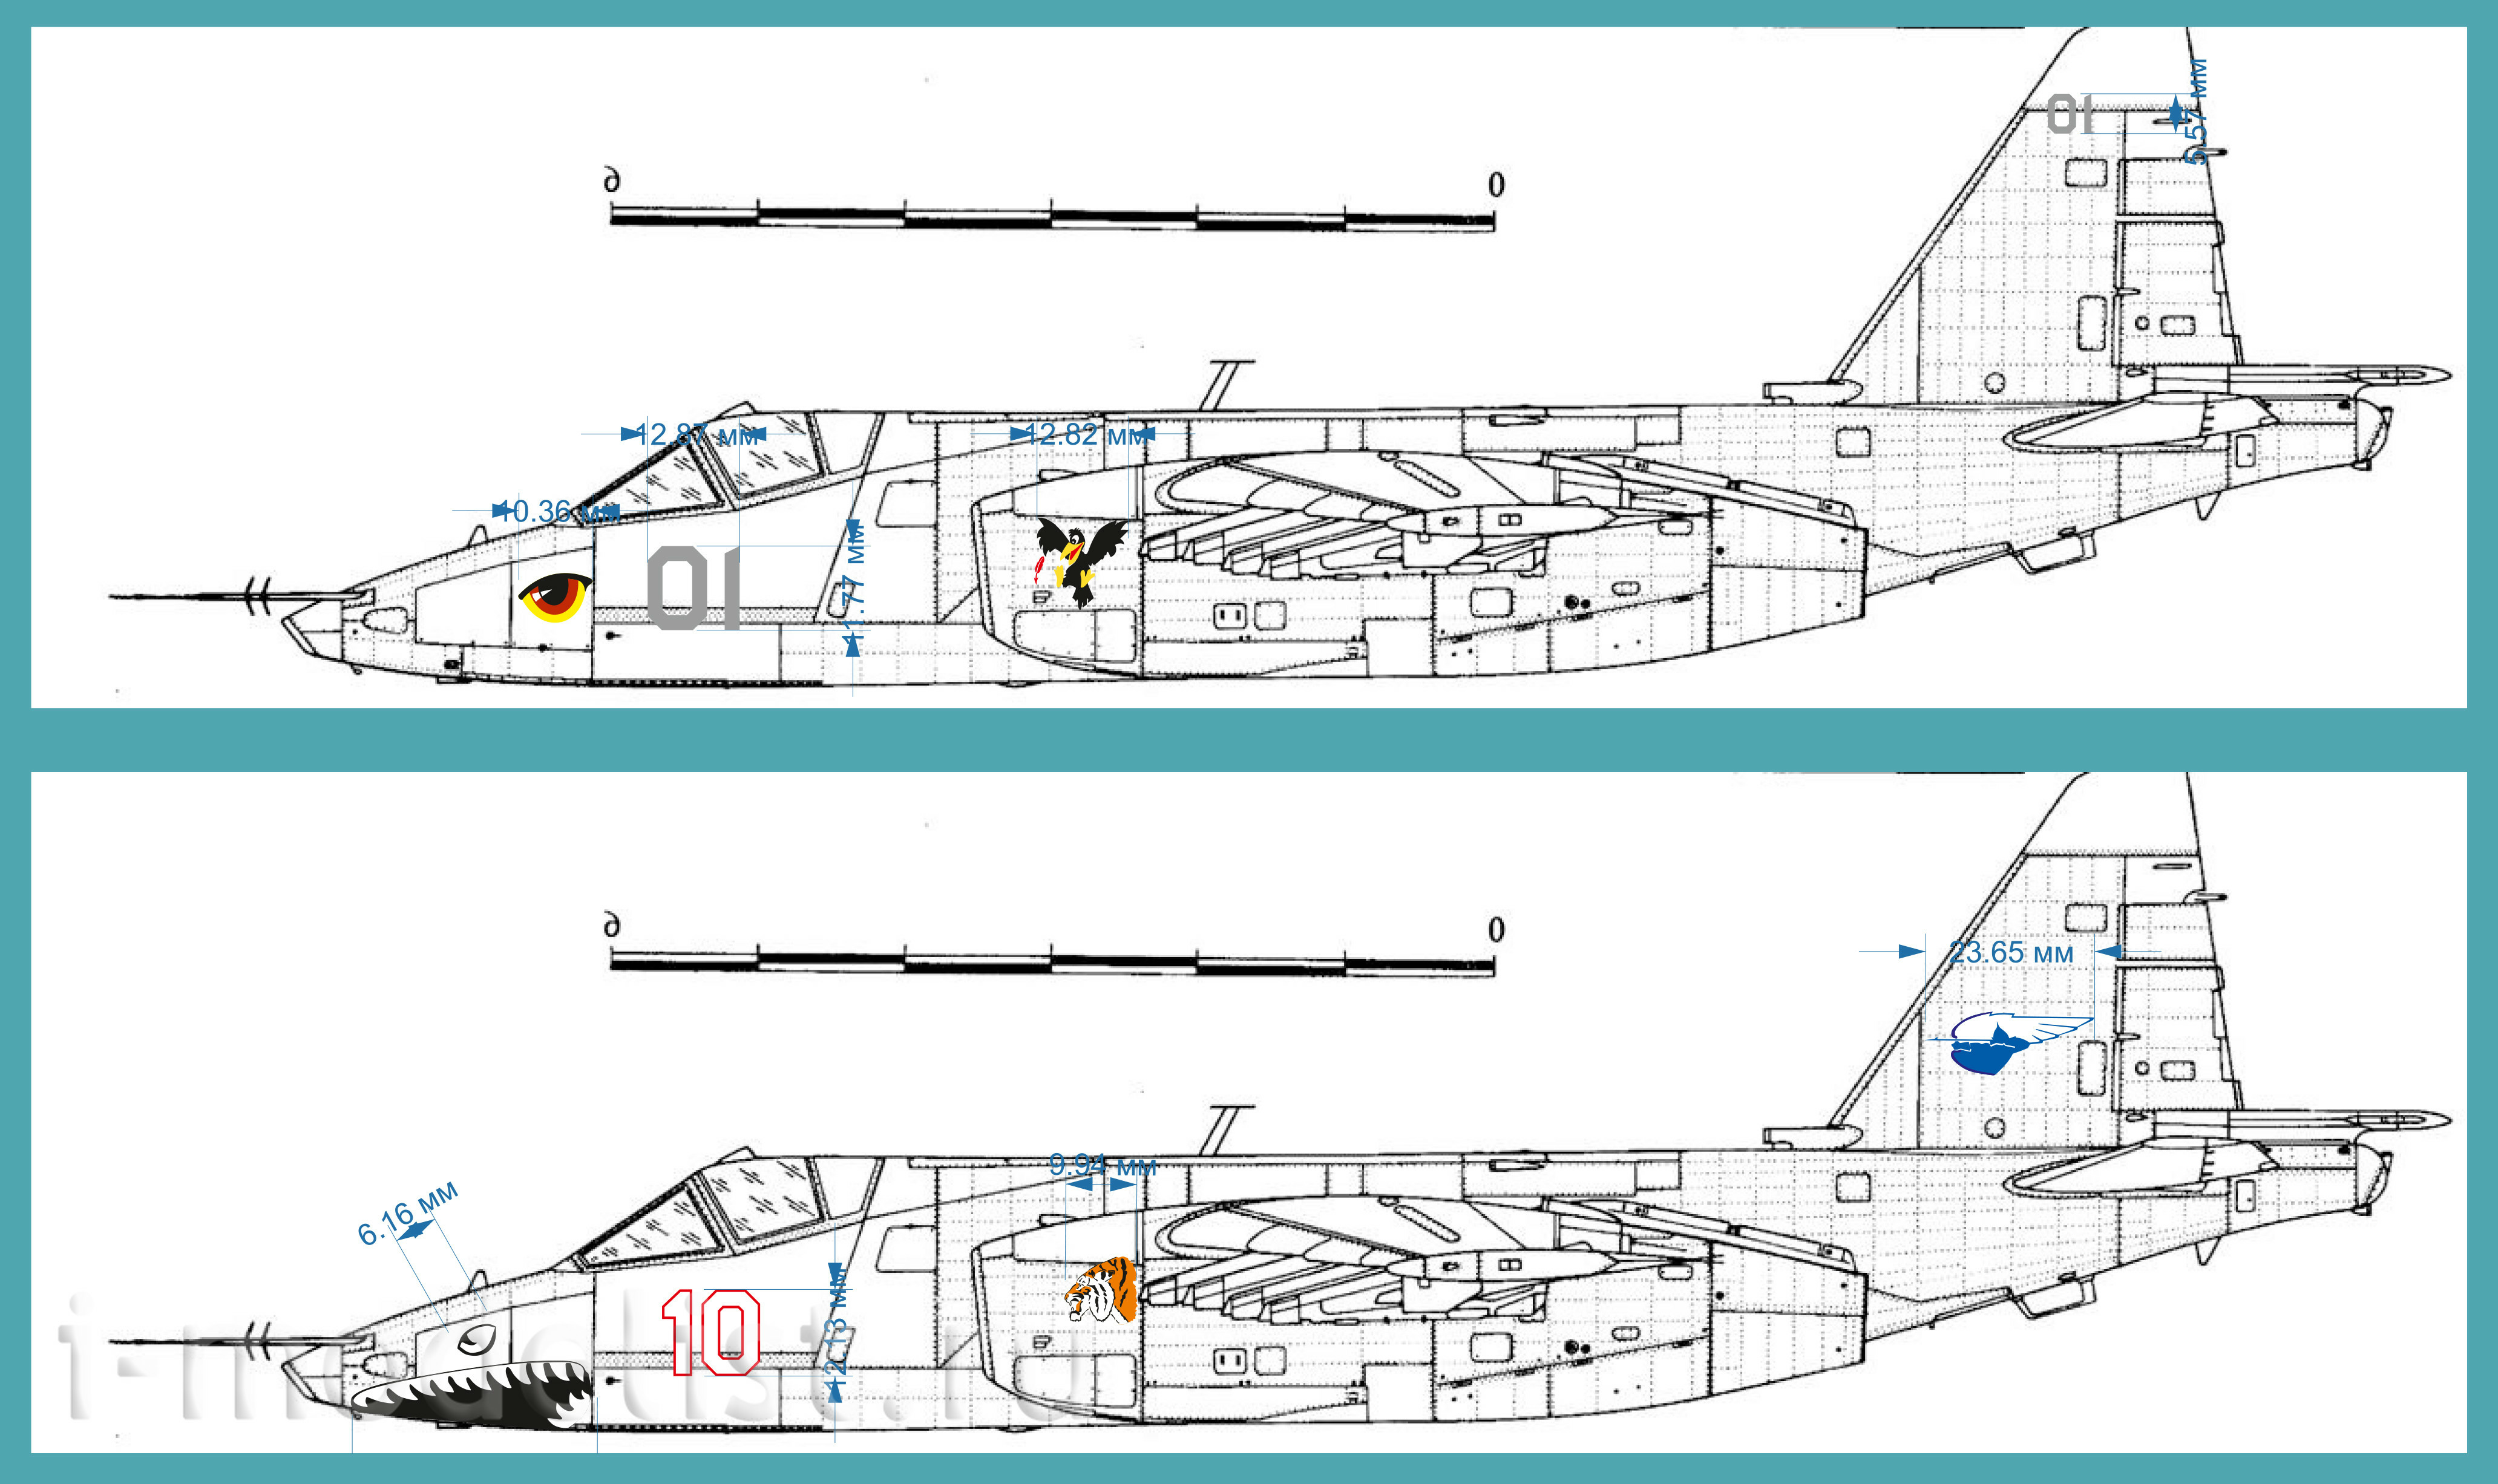 IM-D48001 Imodelist 1/48 Декаль для модели Советский штурмовик Су-25 и СУ-25К Чешских ВВС фирмы 